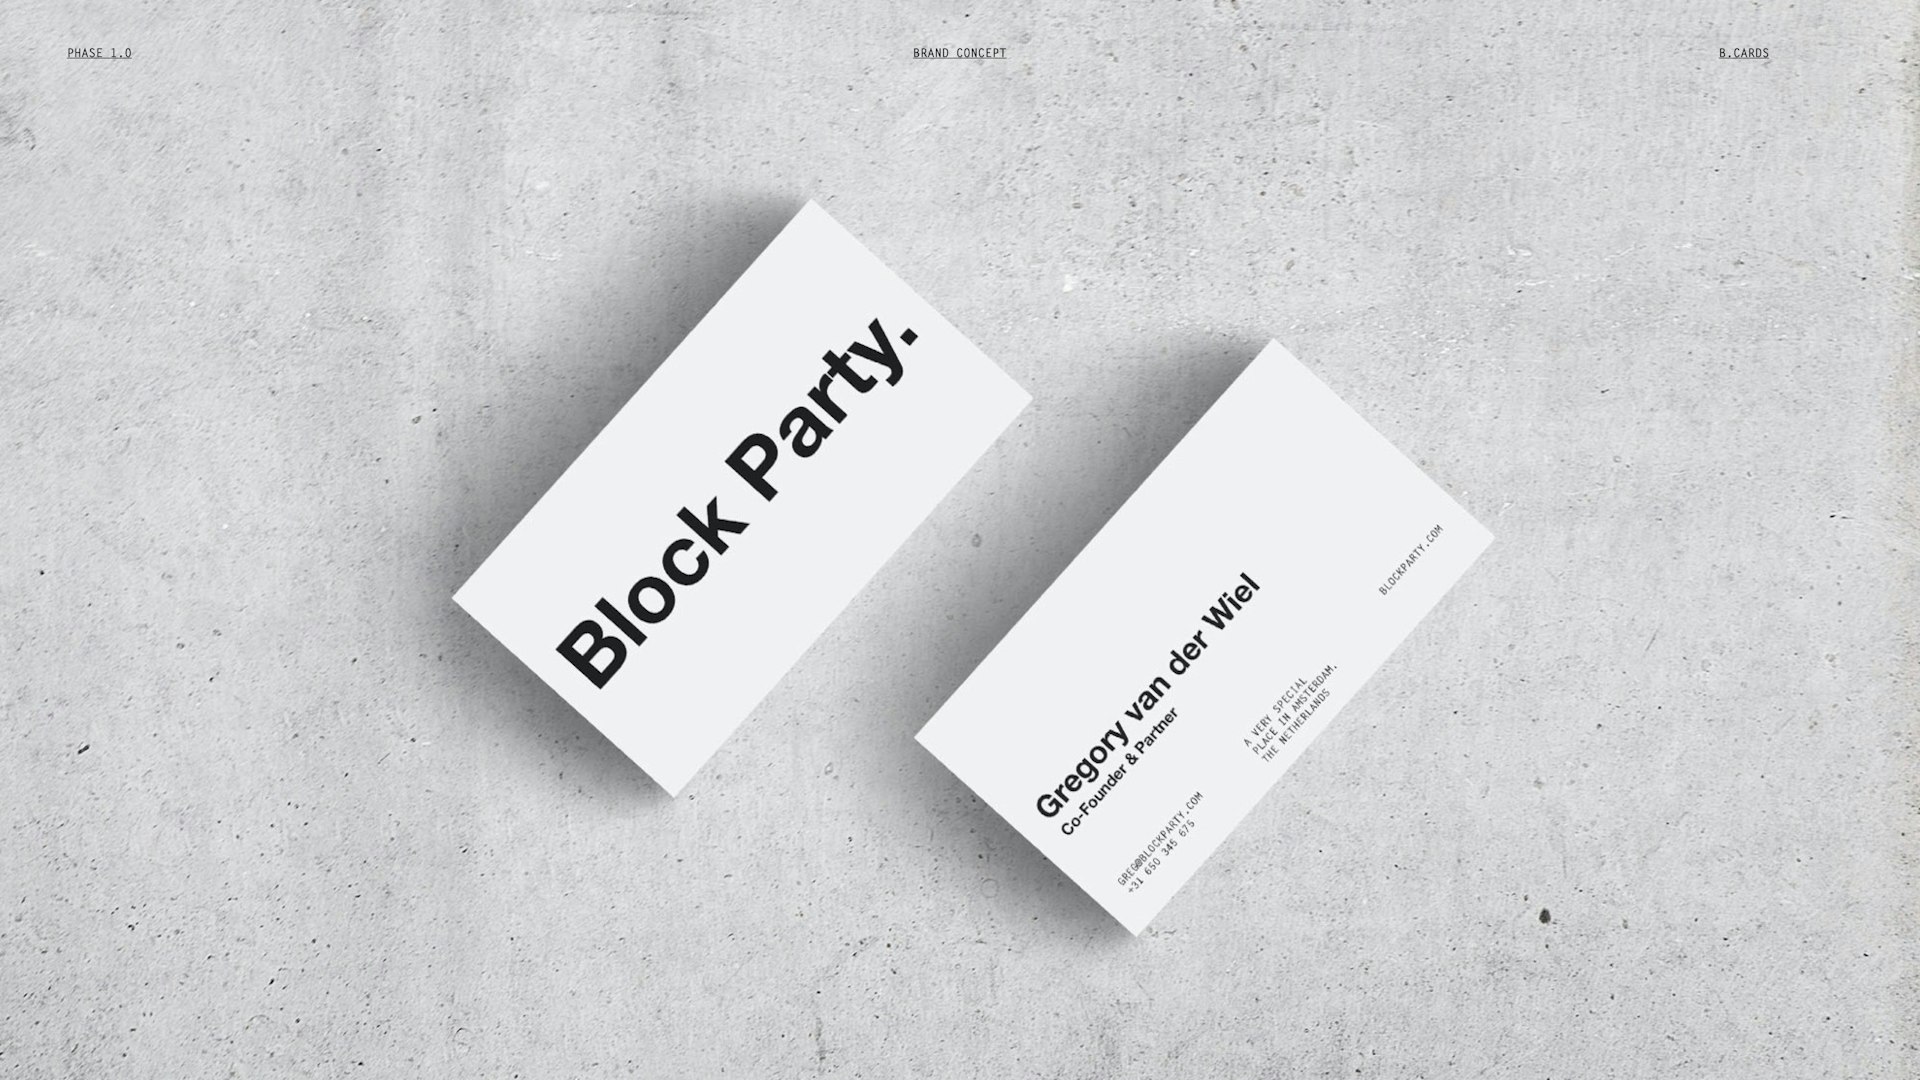 Gregory van der Wiel - Co-Founder & Partner @ Block Party